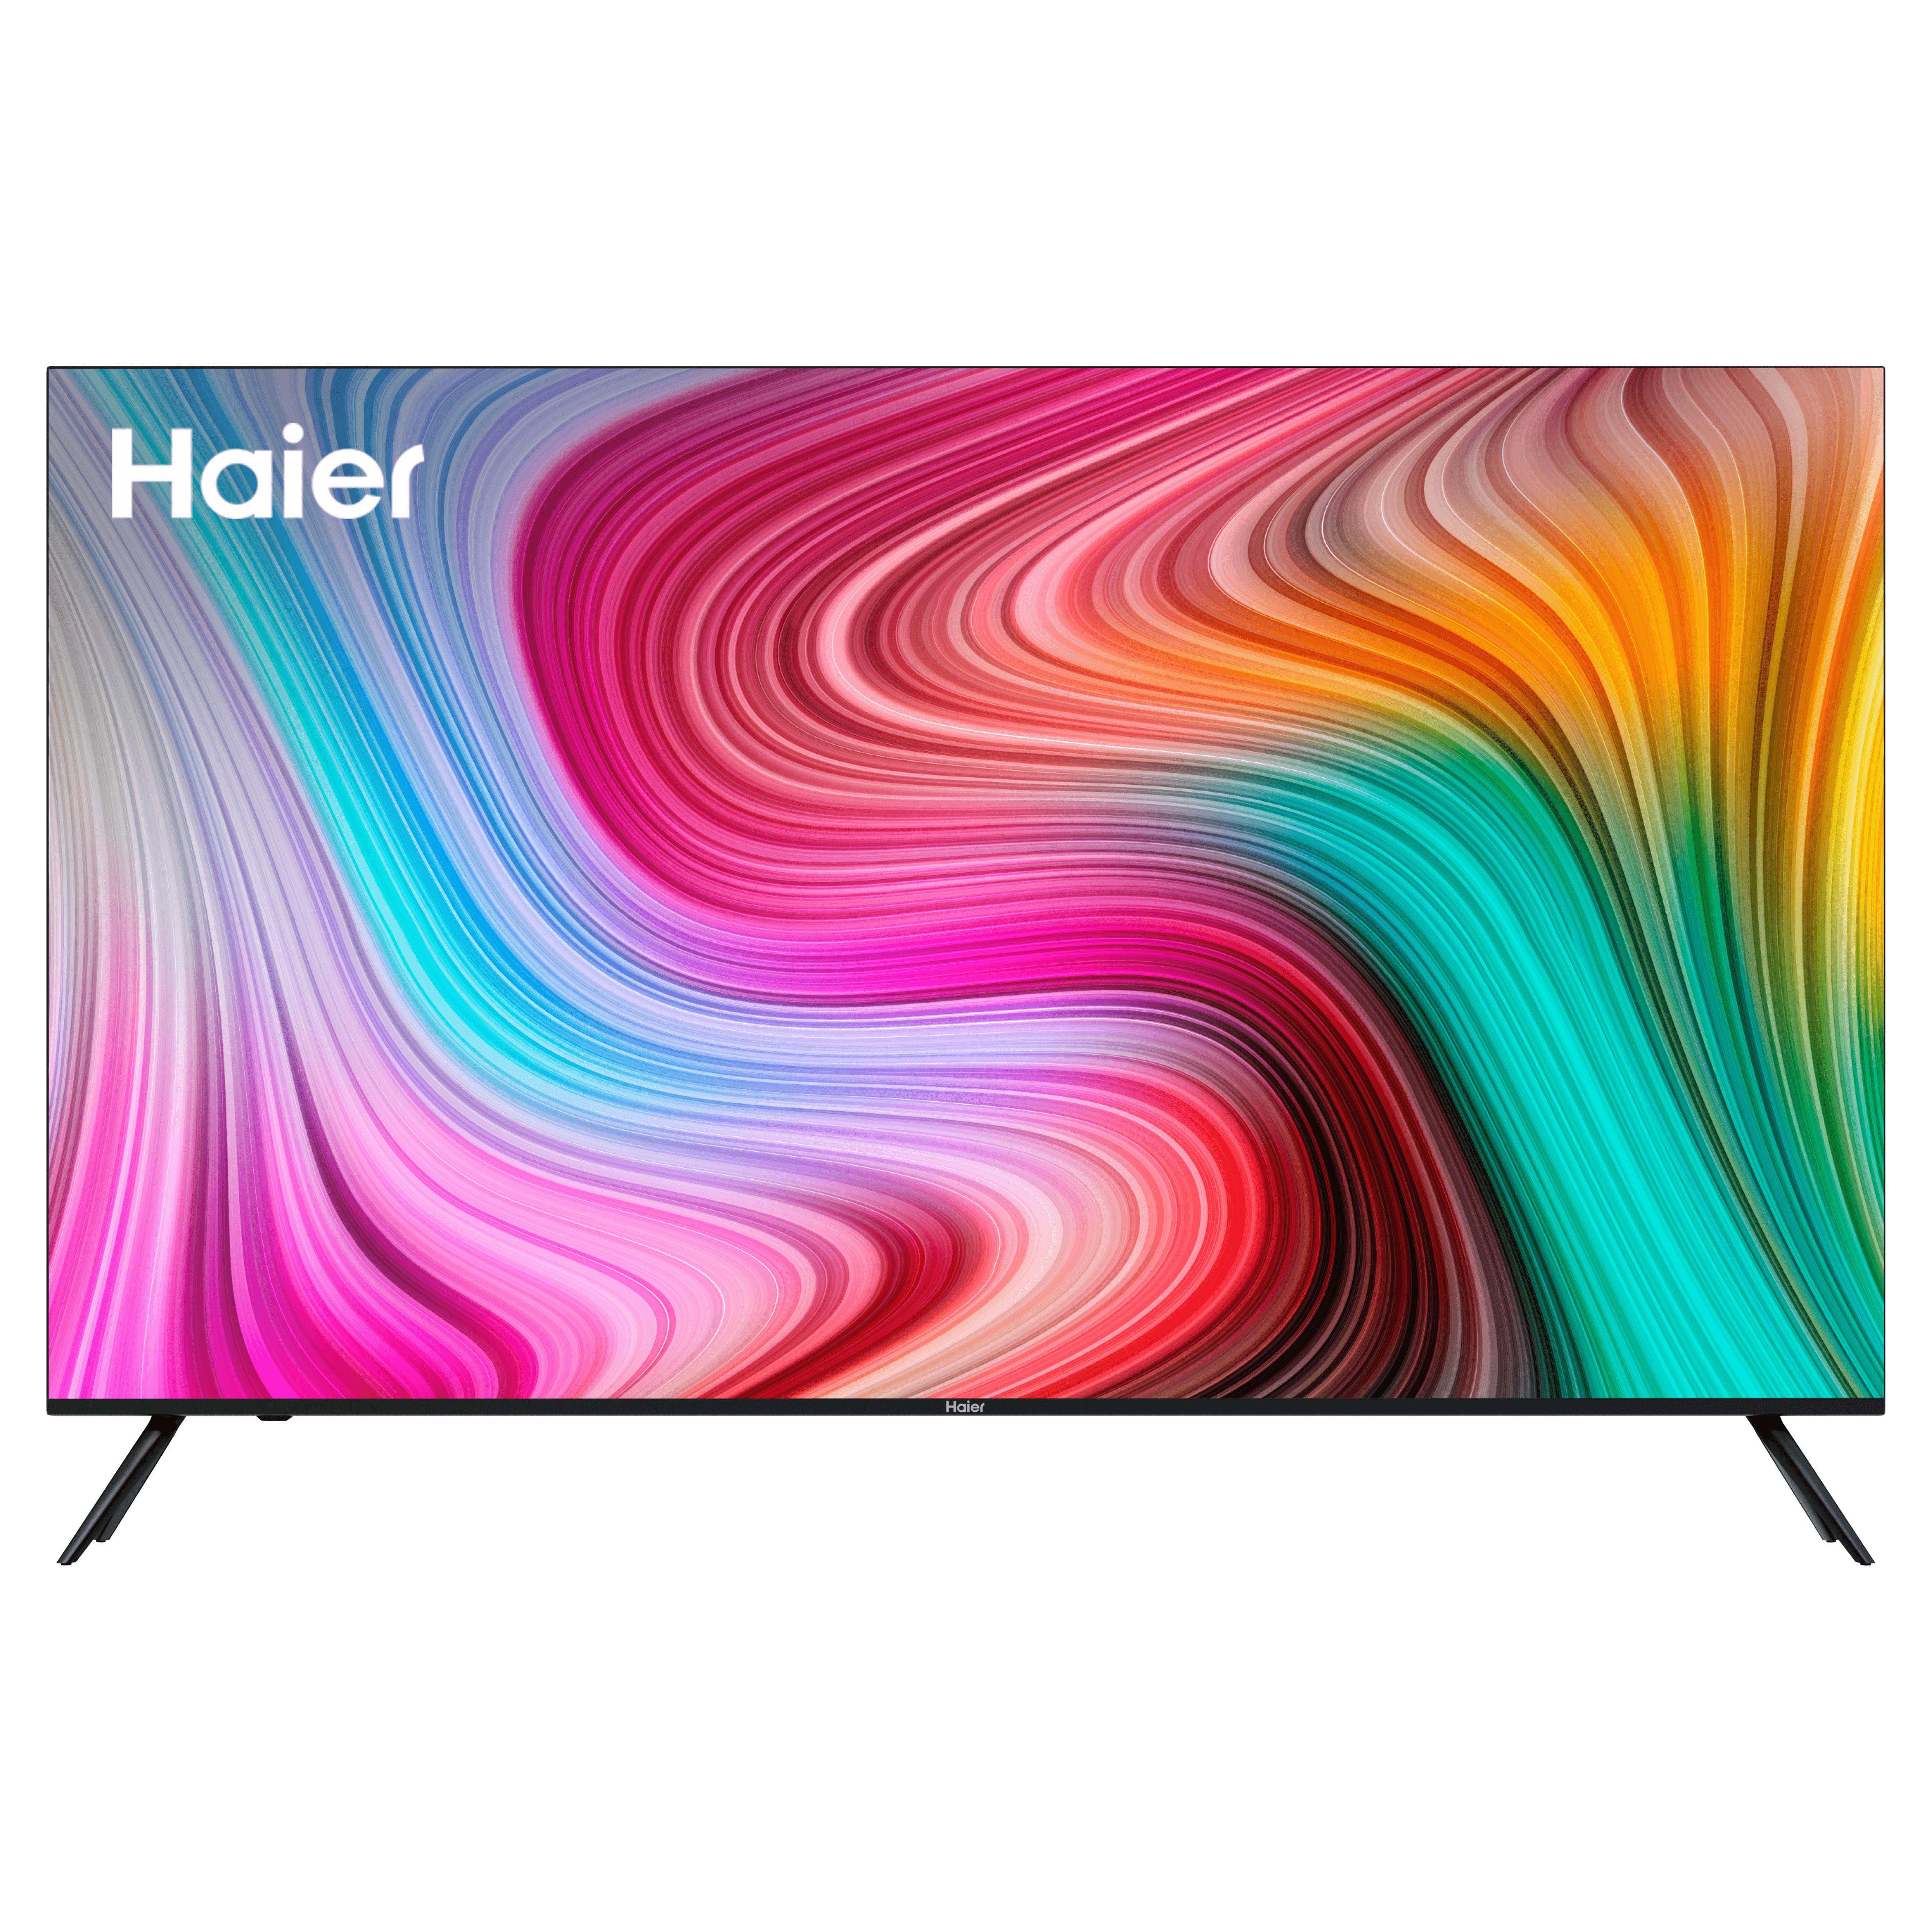 Телевизоры haier купить в спб. Haier 43 Smart TV MX. Haier 50 Smart TV MX. Телевизор Haier 65 Smart TV MX. Телевизор Haier 32 Smart TV MX.